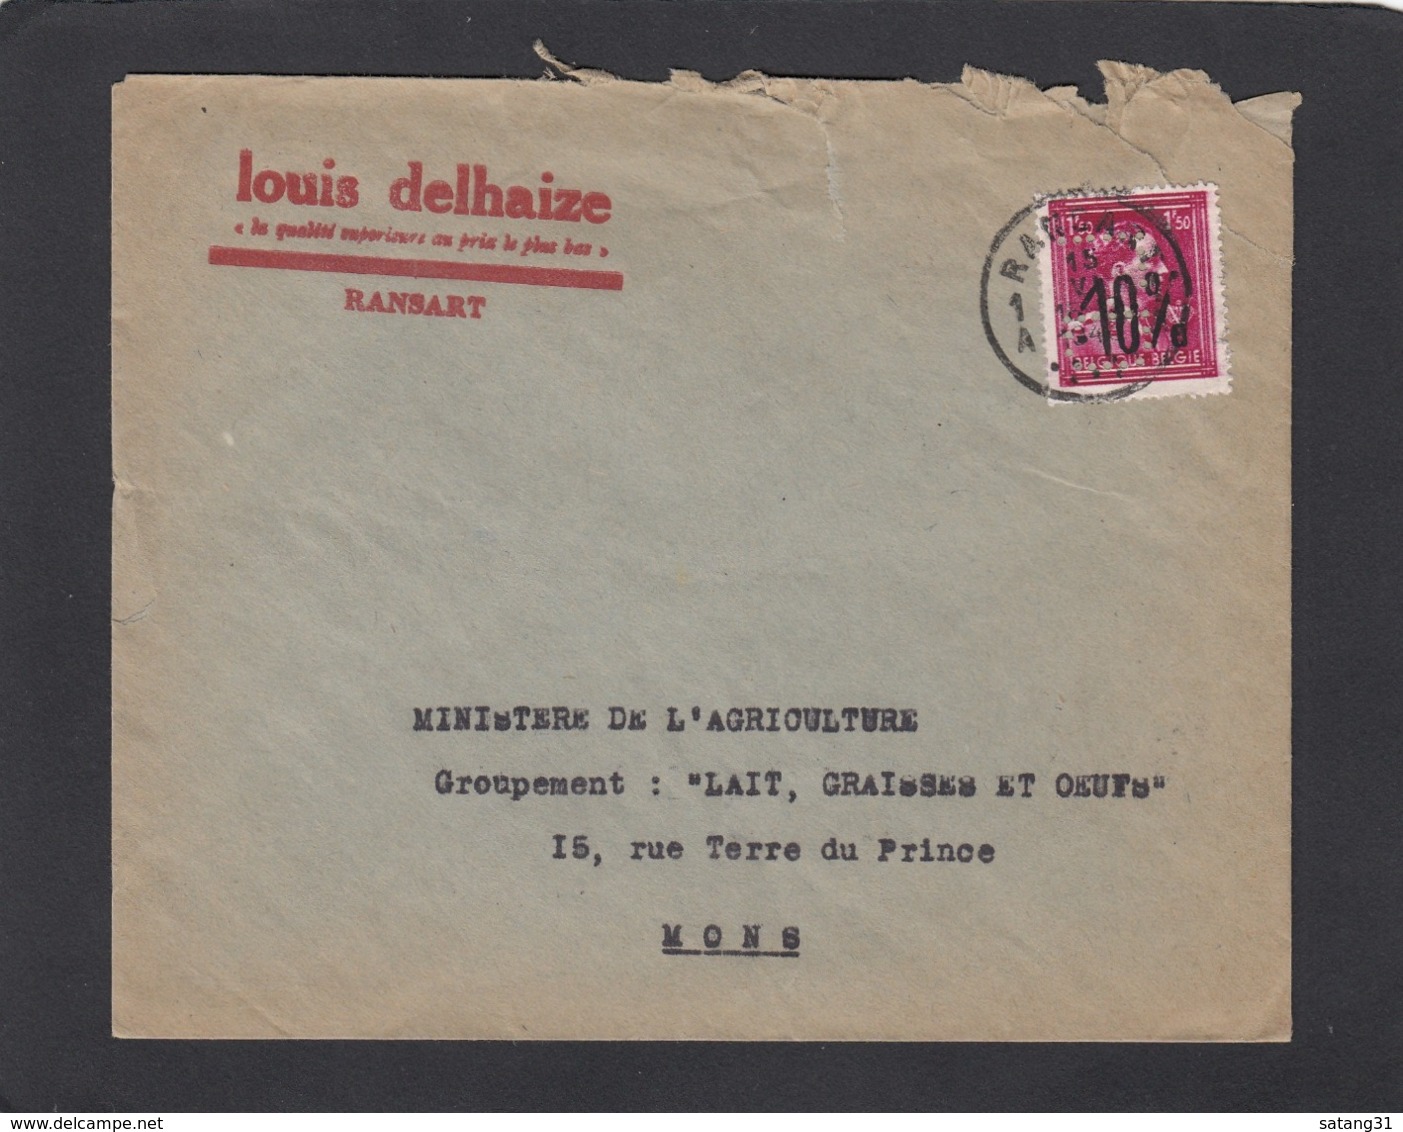 FIRMENLOCHUNG/PERFIN/PERFORATION. LOUIS DELHAIZE,RANSART. - 1946 -10%